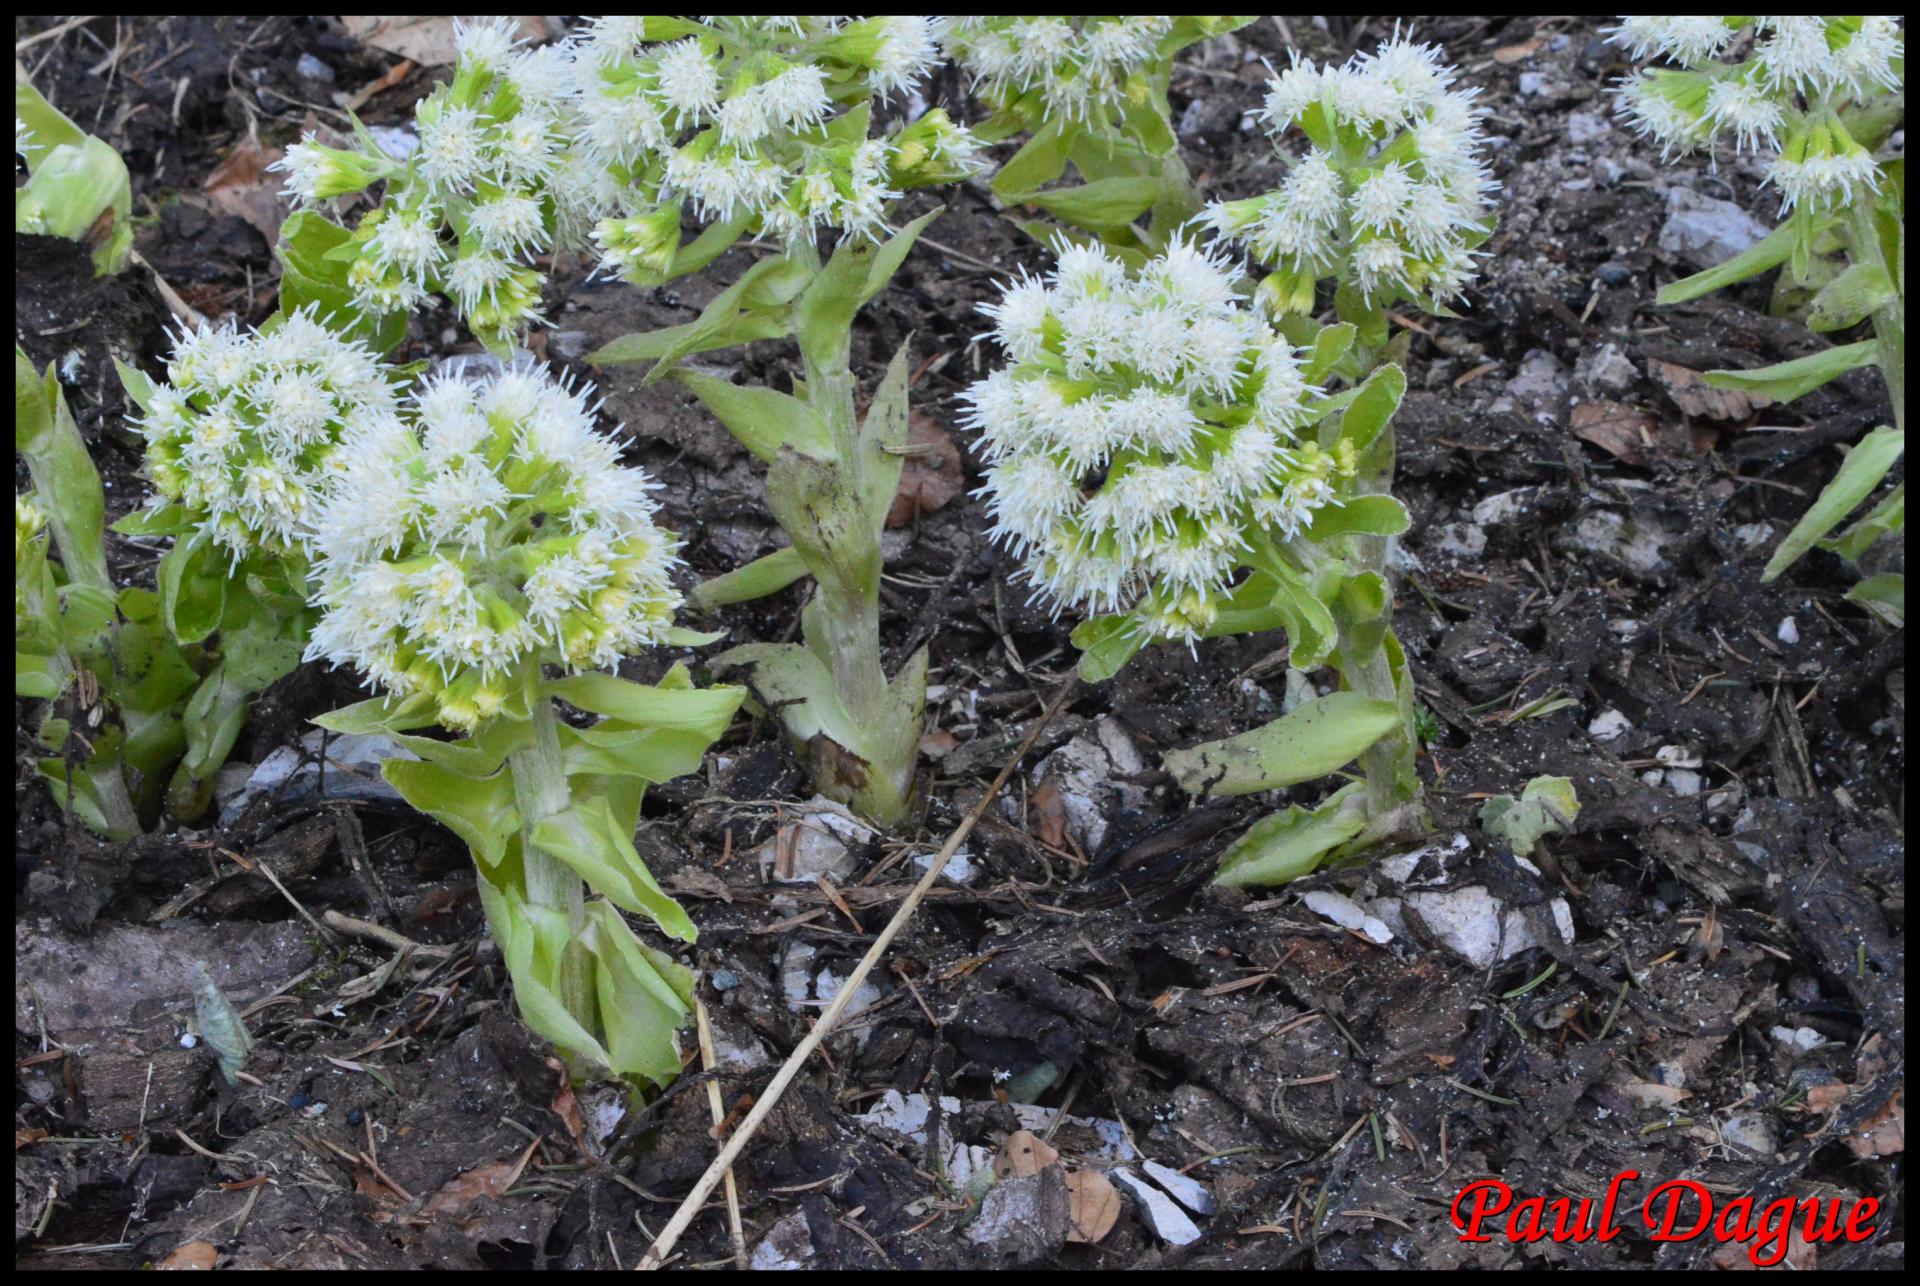 355 petasite blanche petasite albus asteraceae